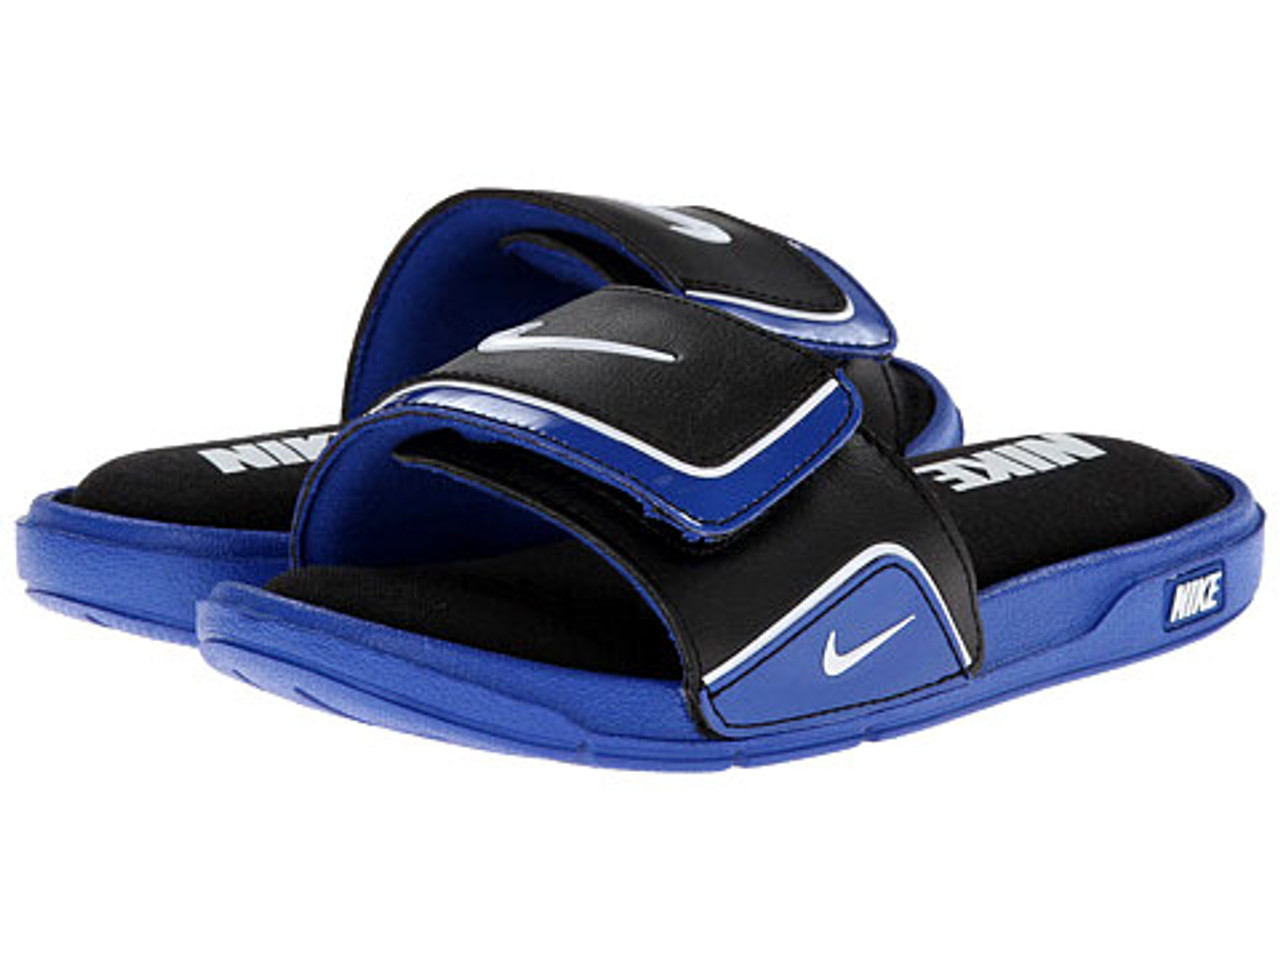 Nike Comfort Slide Sandal In Black For Men Lyst | lupon.gov.ph